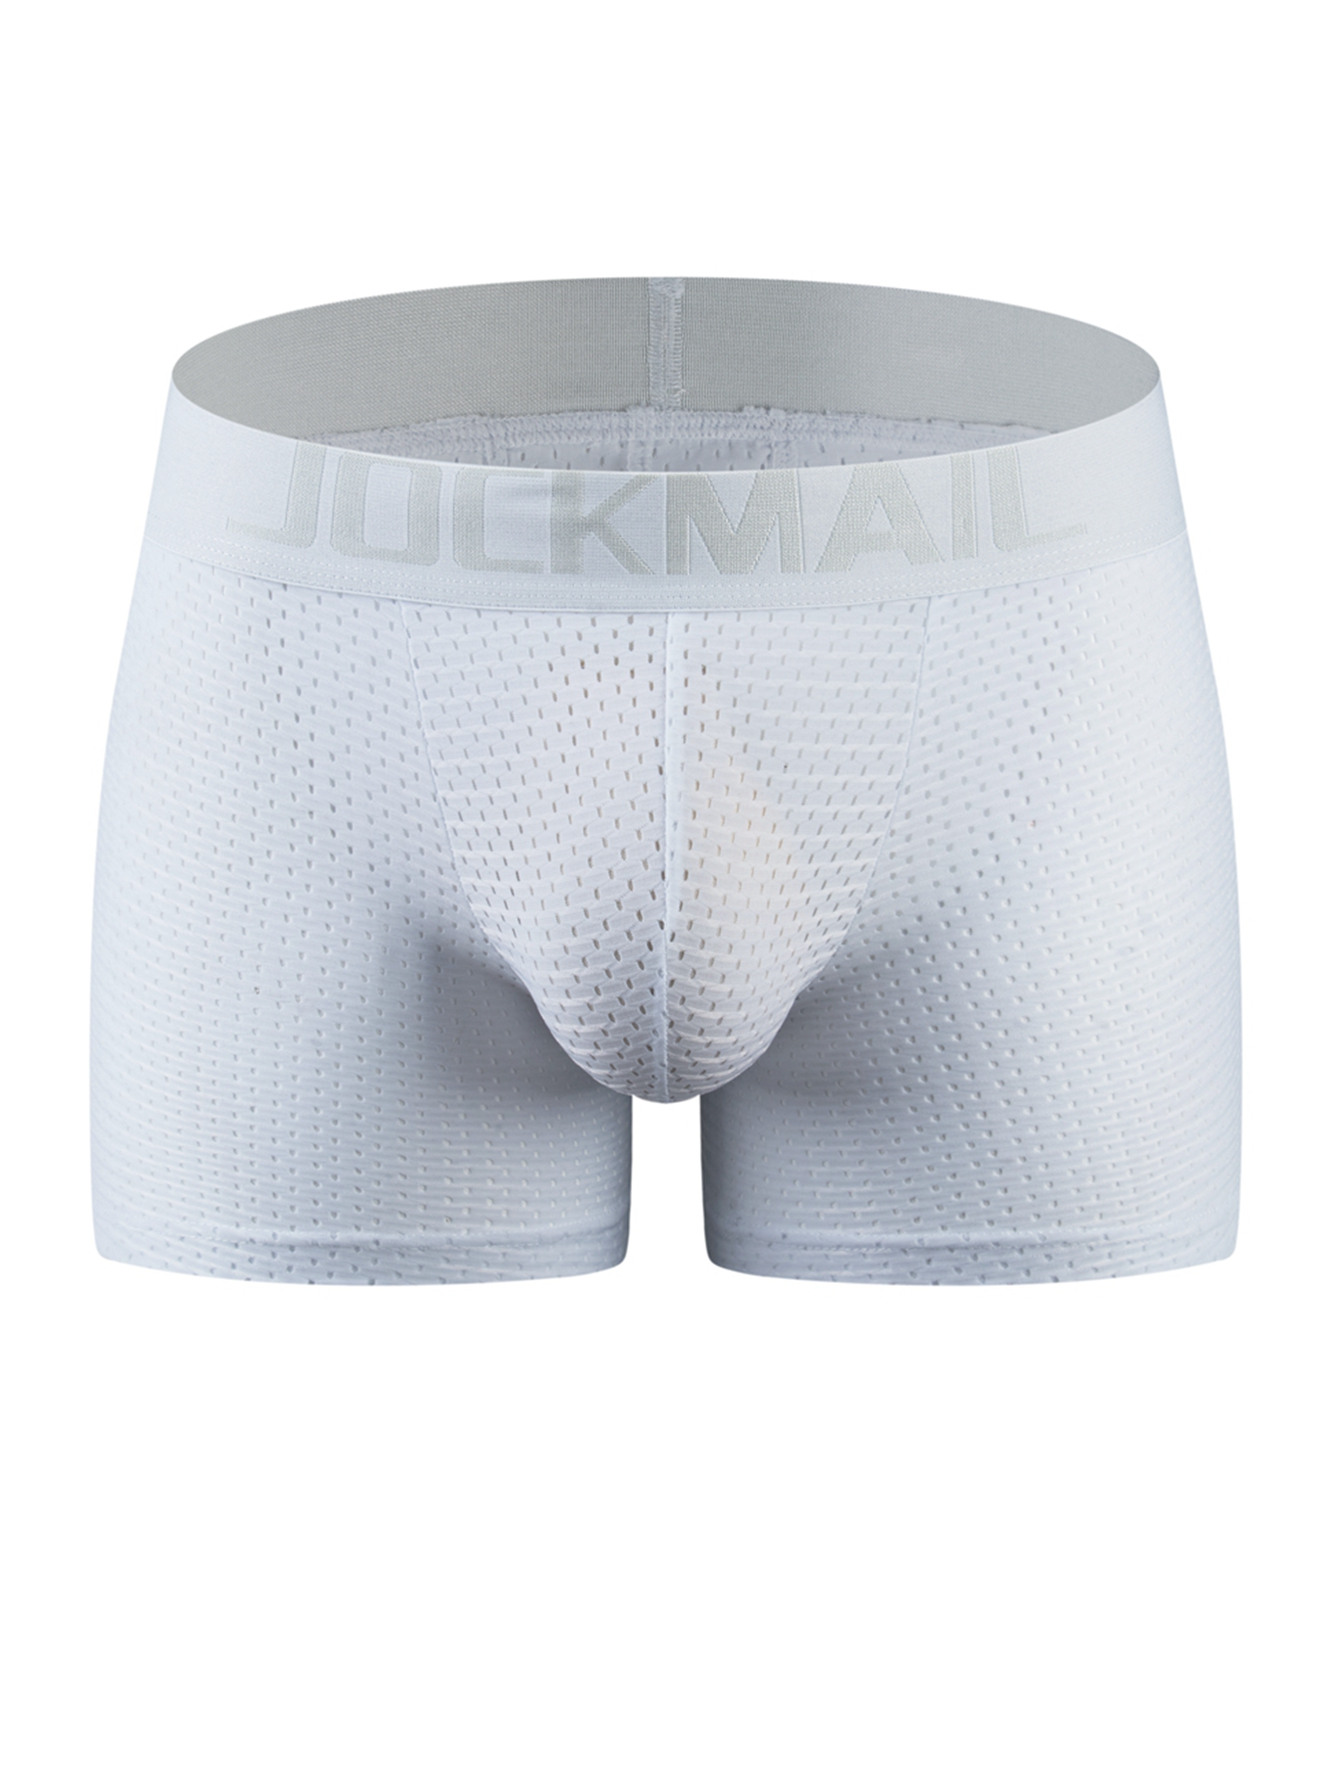 MEN'S TRUNKS BUTT Lift Enhancing Briefs Sexy Padded Hip Up Underwear Cotton  £8.99 - PicClick UK